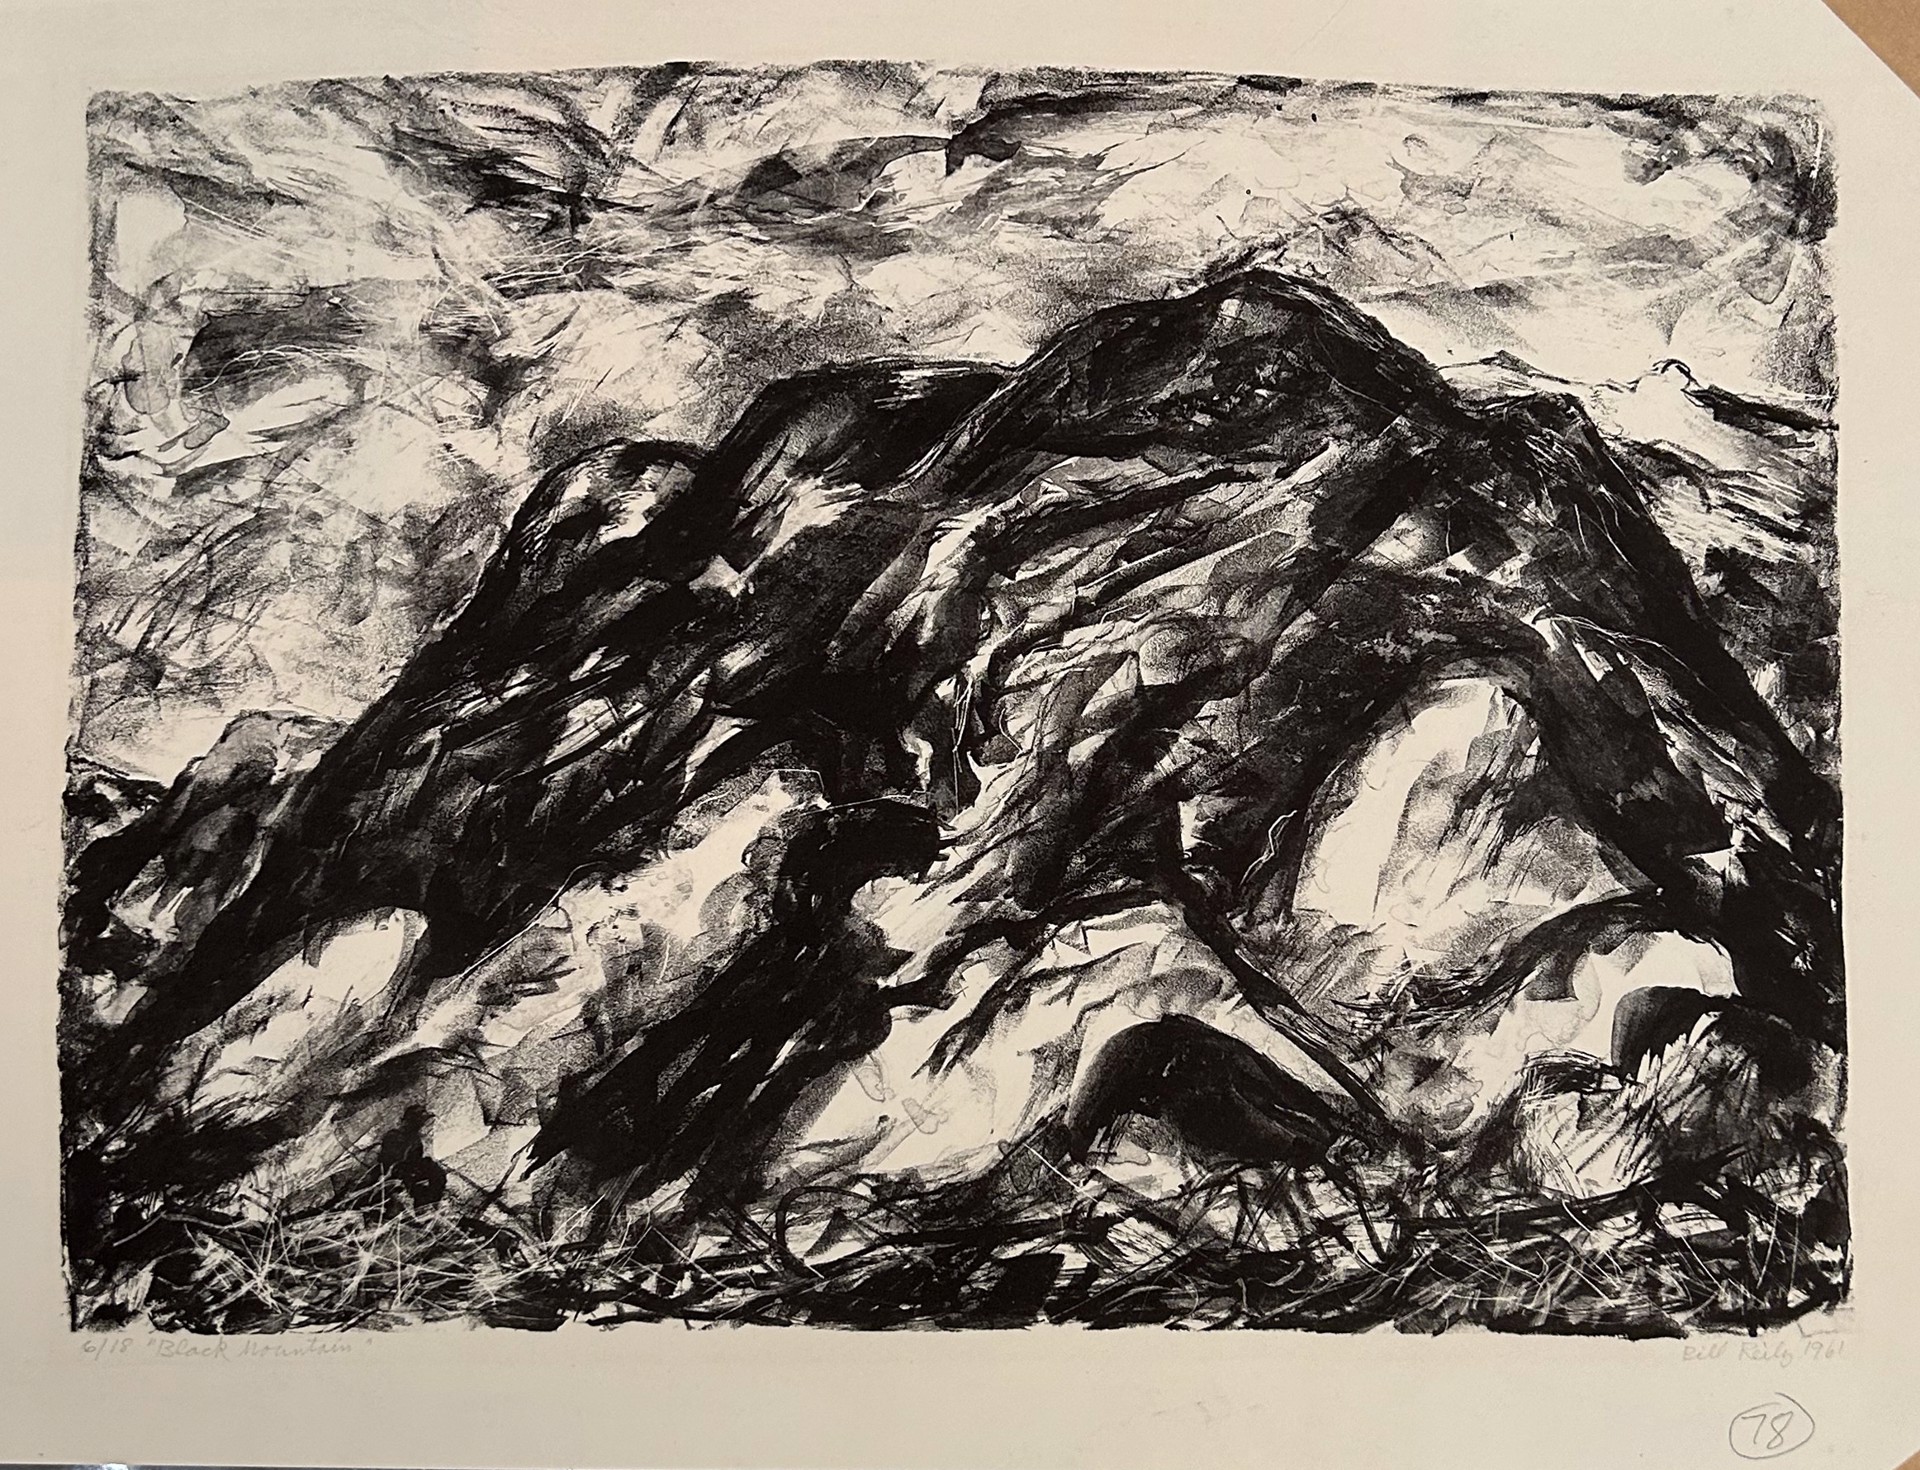 78. Black Mountain by Bill Reily - Prints